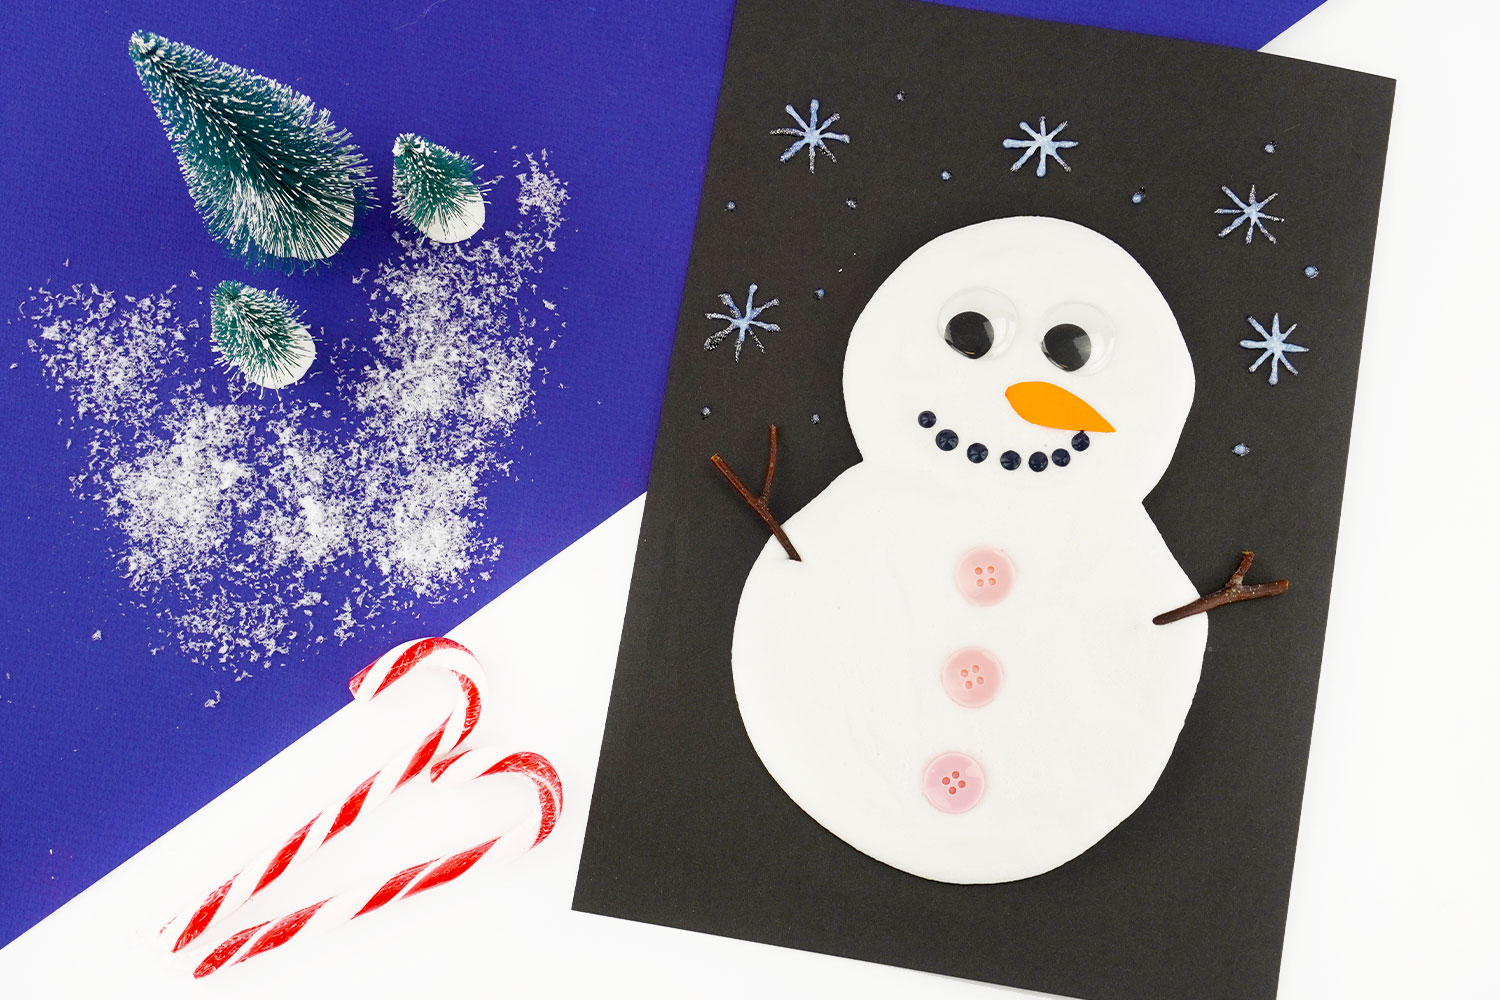 Bonhomme de neige avec de la peinture gonflante - Tutos Noël - 10